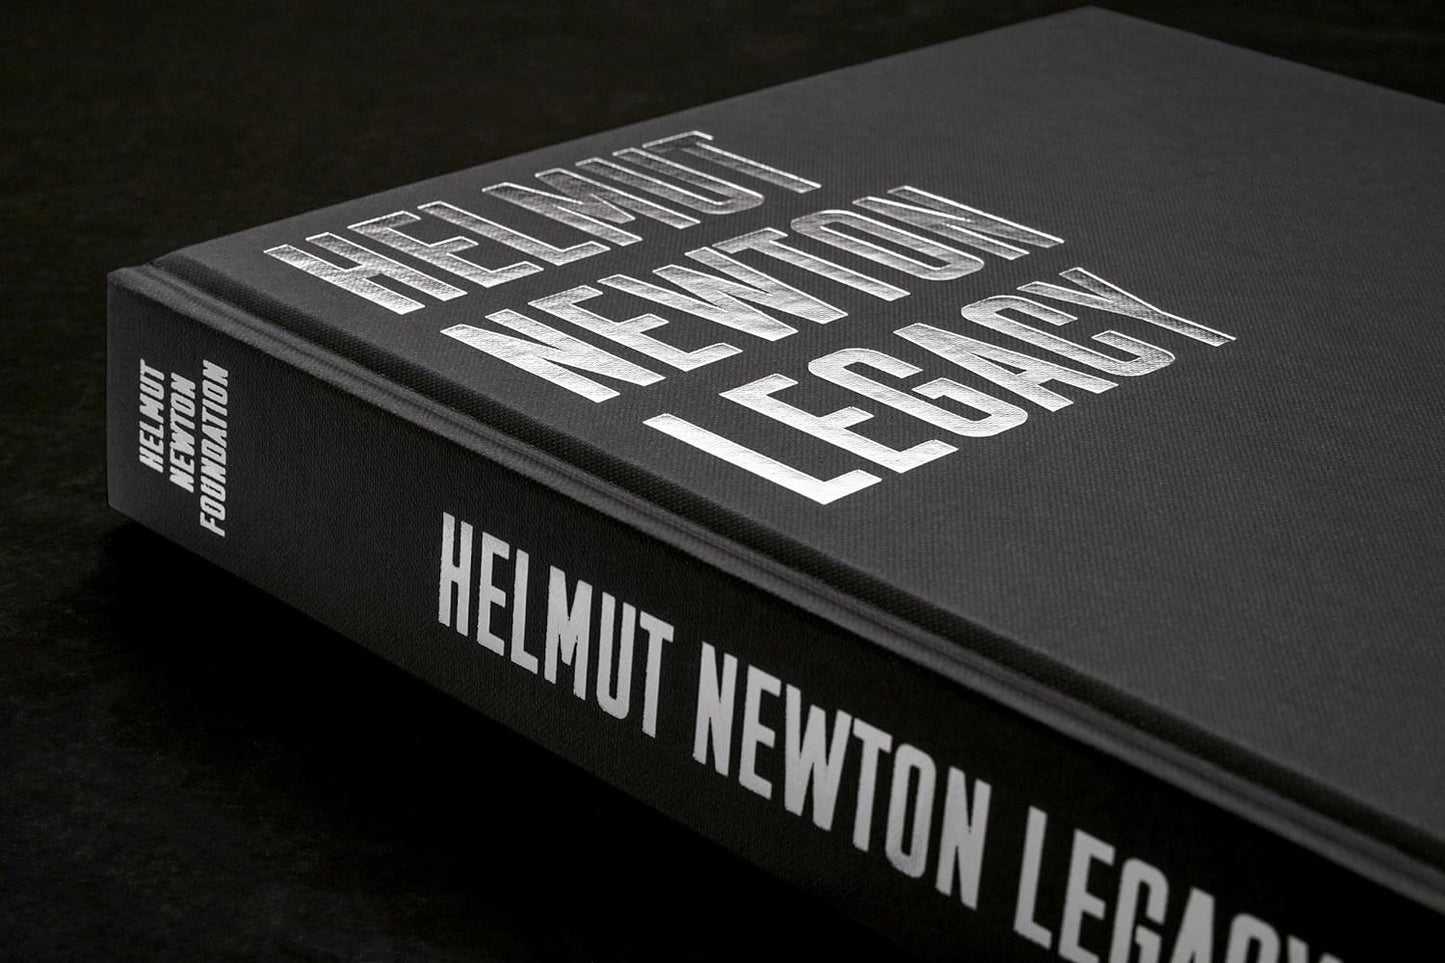 Helmut Newton. Legacy